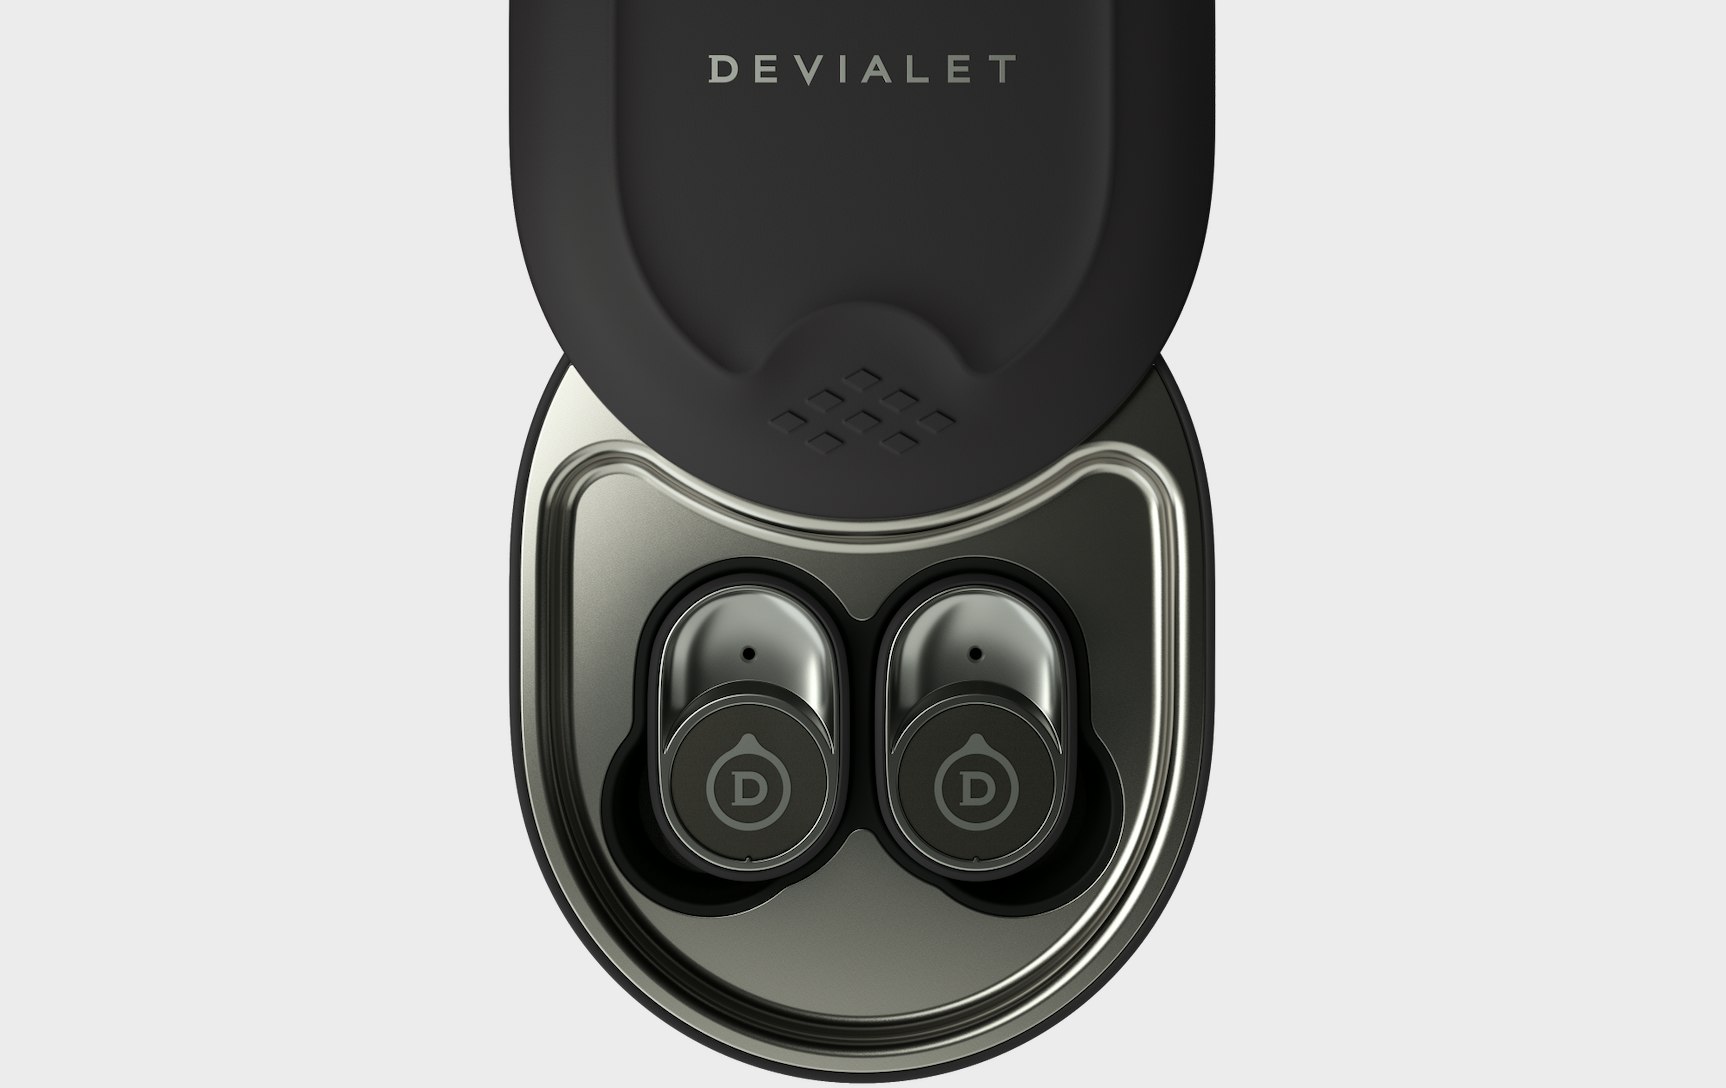  Devialet Gemini II - True Wireless Earbuds (Iconic